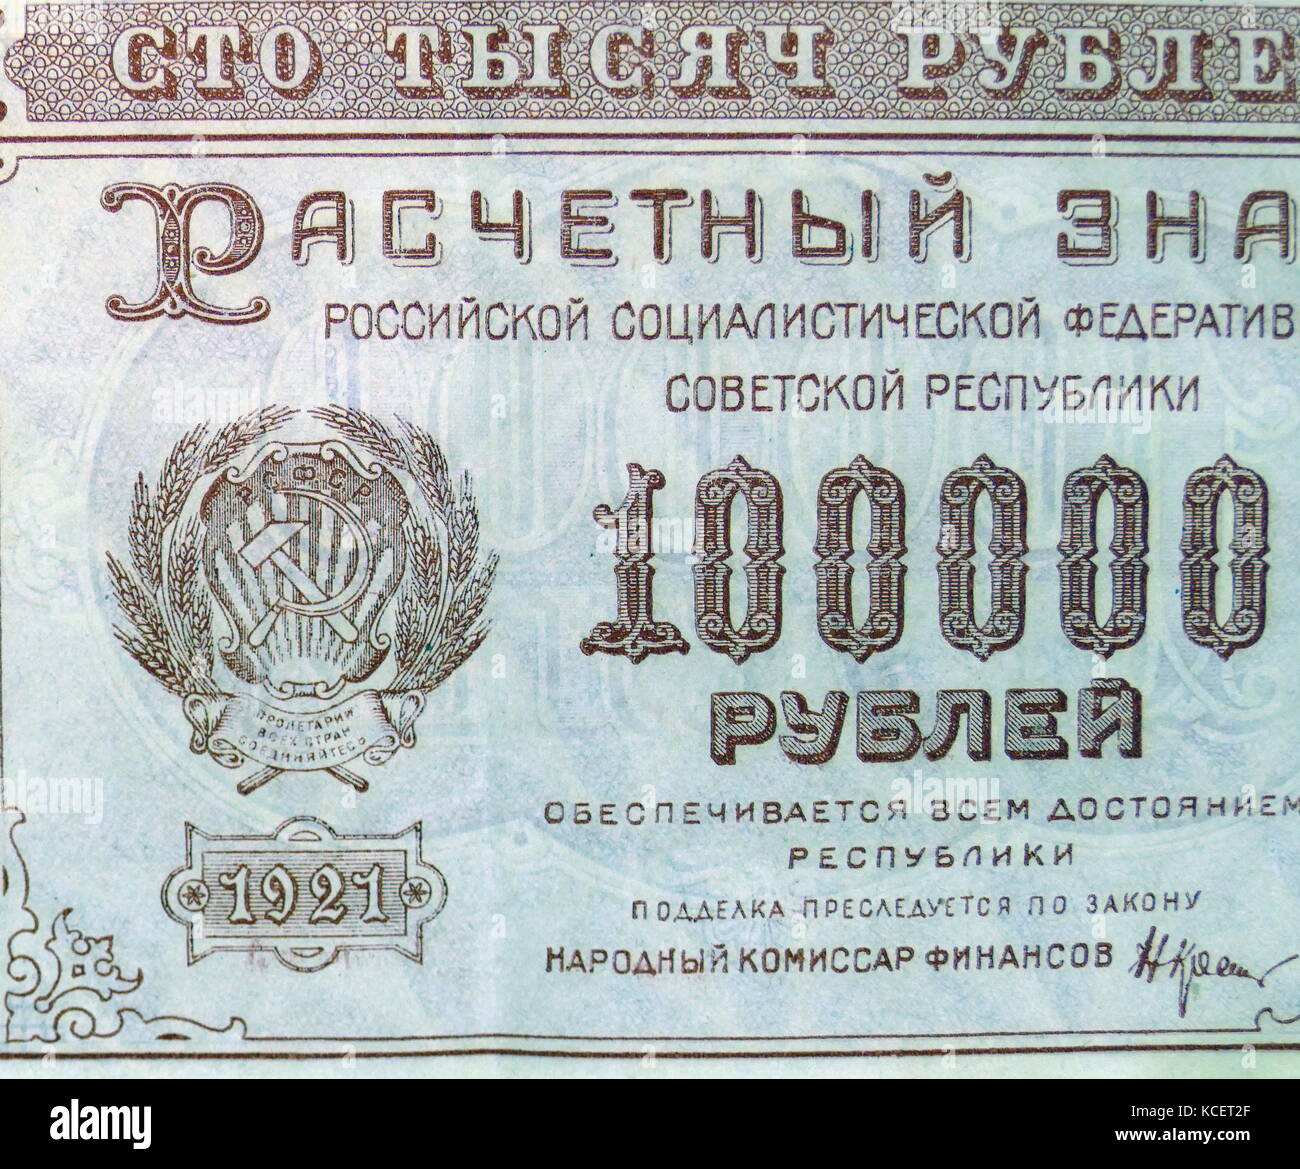 Sovietica 100.000 Russian Rouble banconota (principale rivolto verso il lato) datata 1921, rilasciato come valuta, in zone controllate dai comunisti le forze russe durante la guerra civile, dopo la rivoluzione russa del 1917. Foto Stock